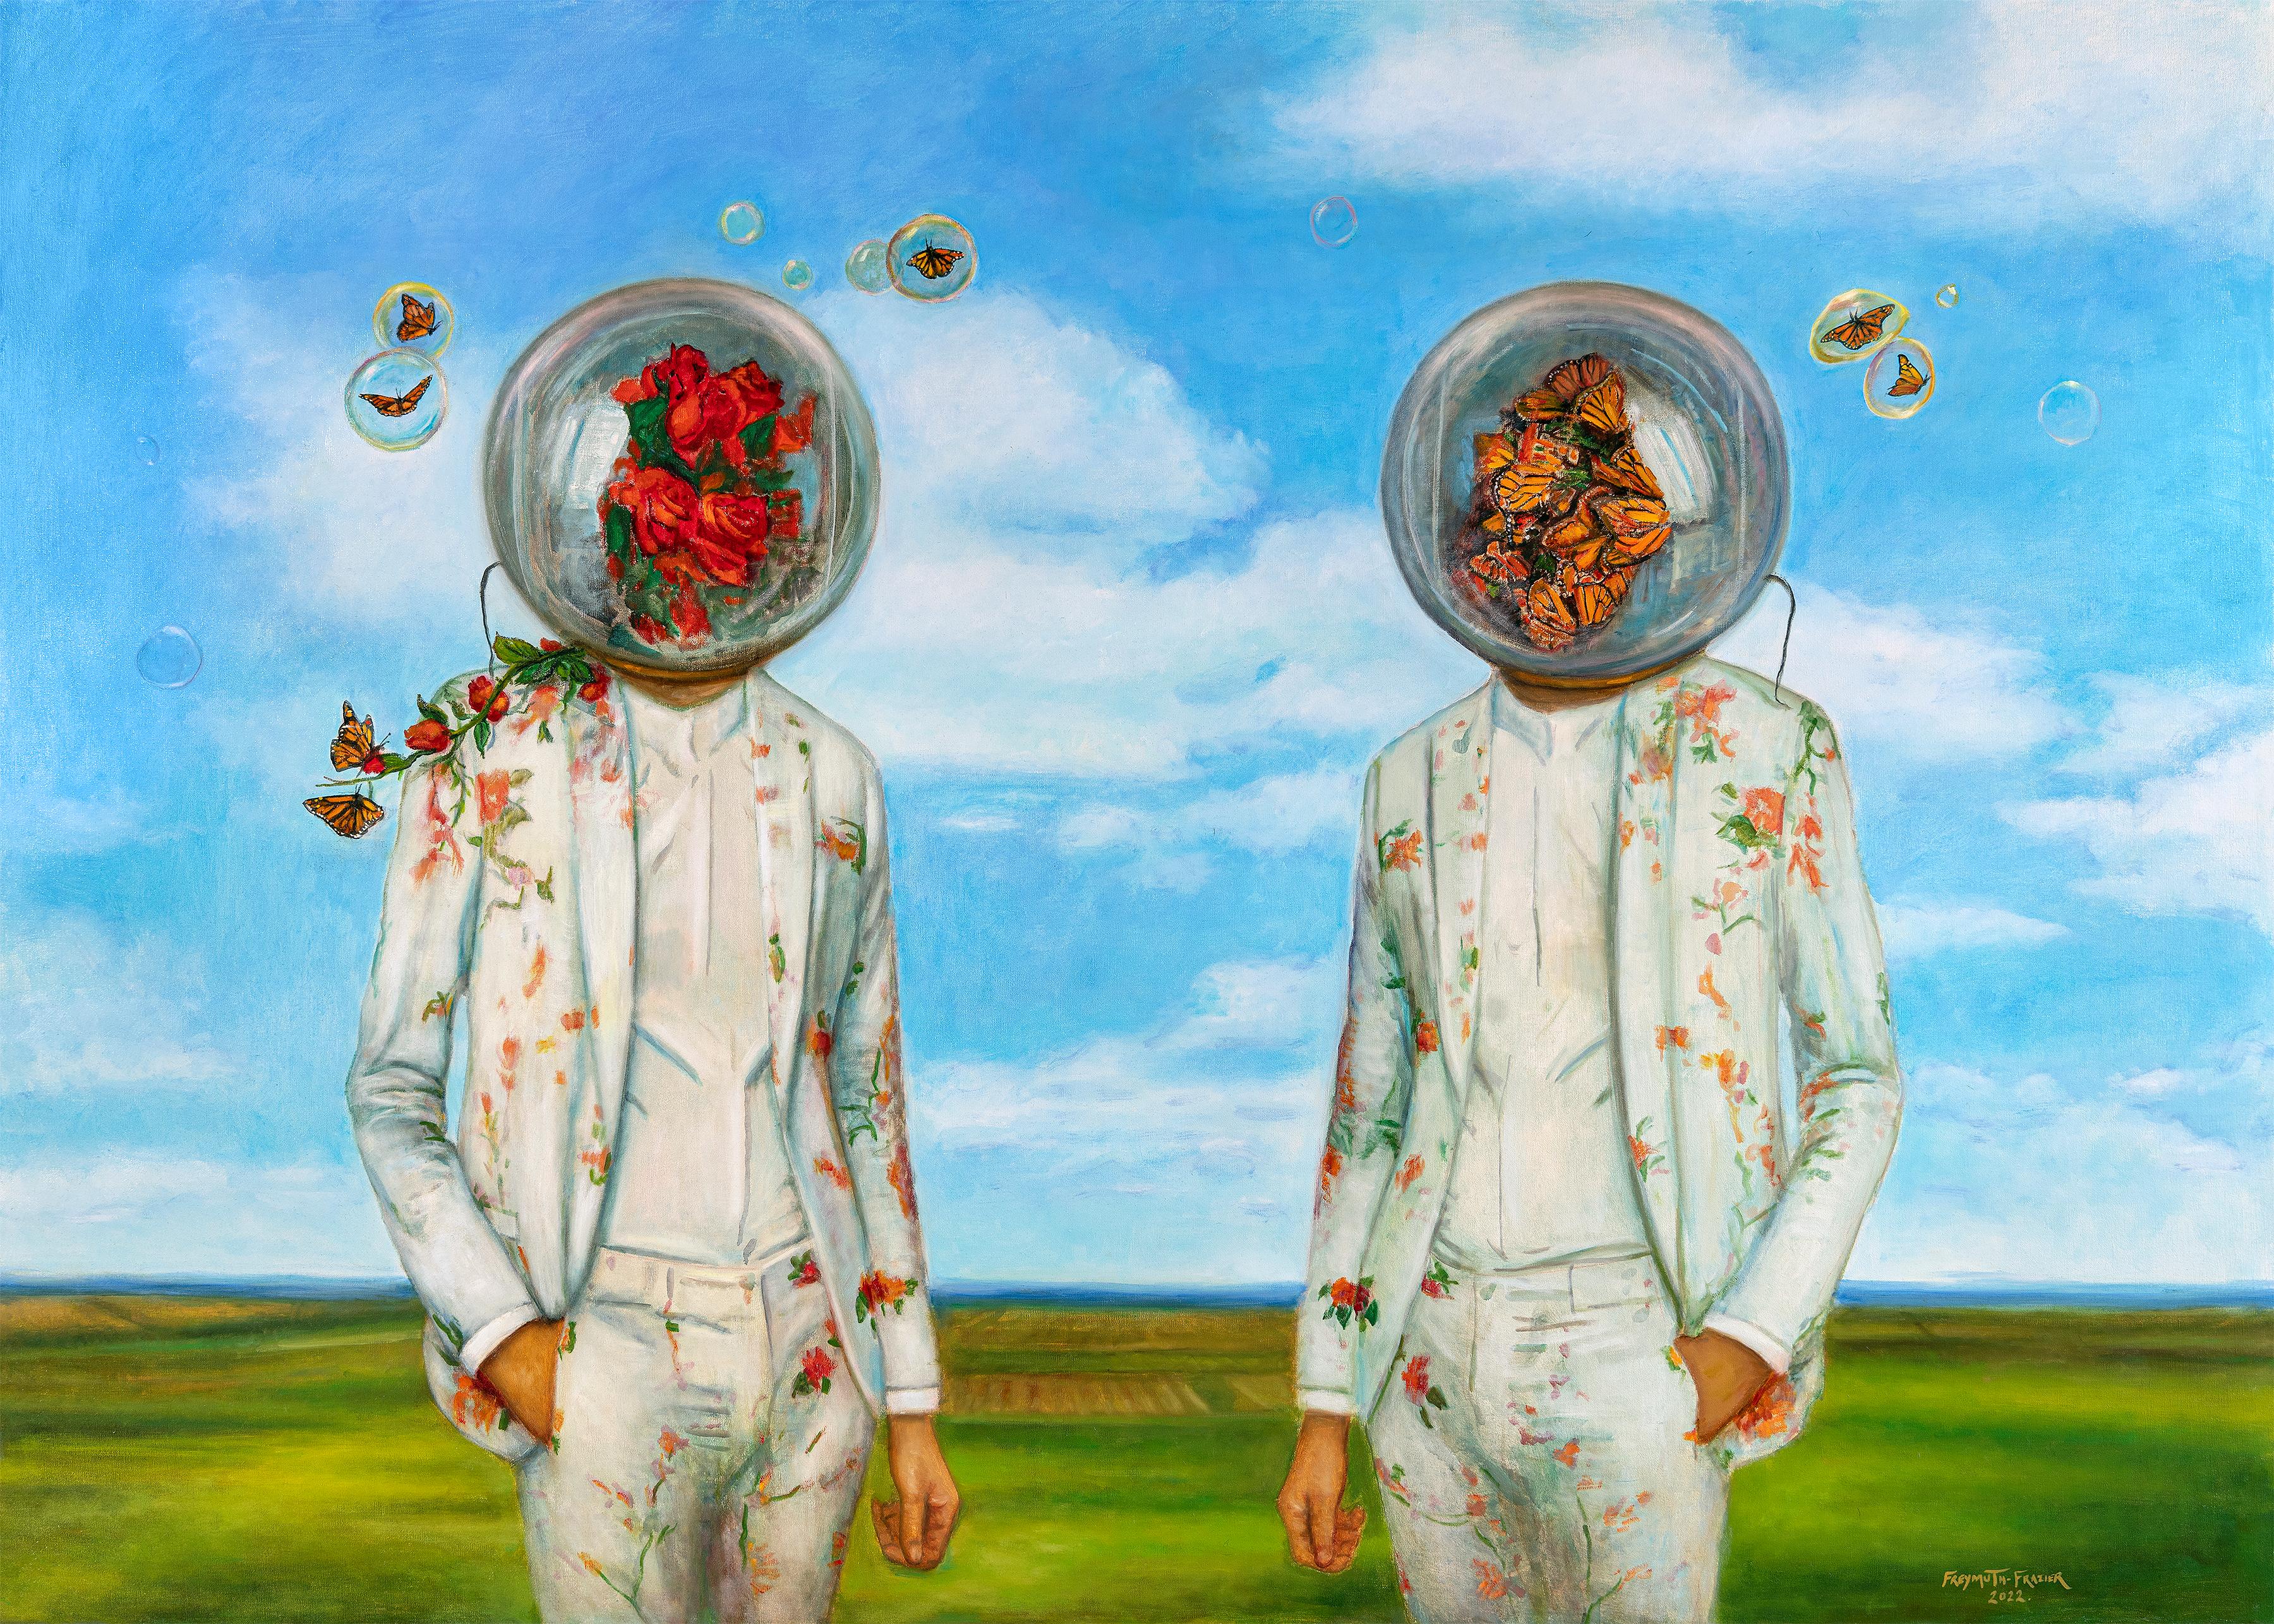 Pollinatoren – zwei Figuren in Blumenanzügen, umgeben von Schmetterlingen, leuchtender Himmel